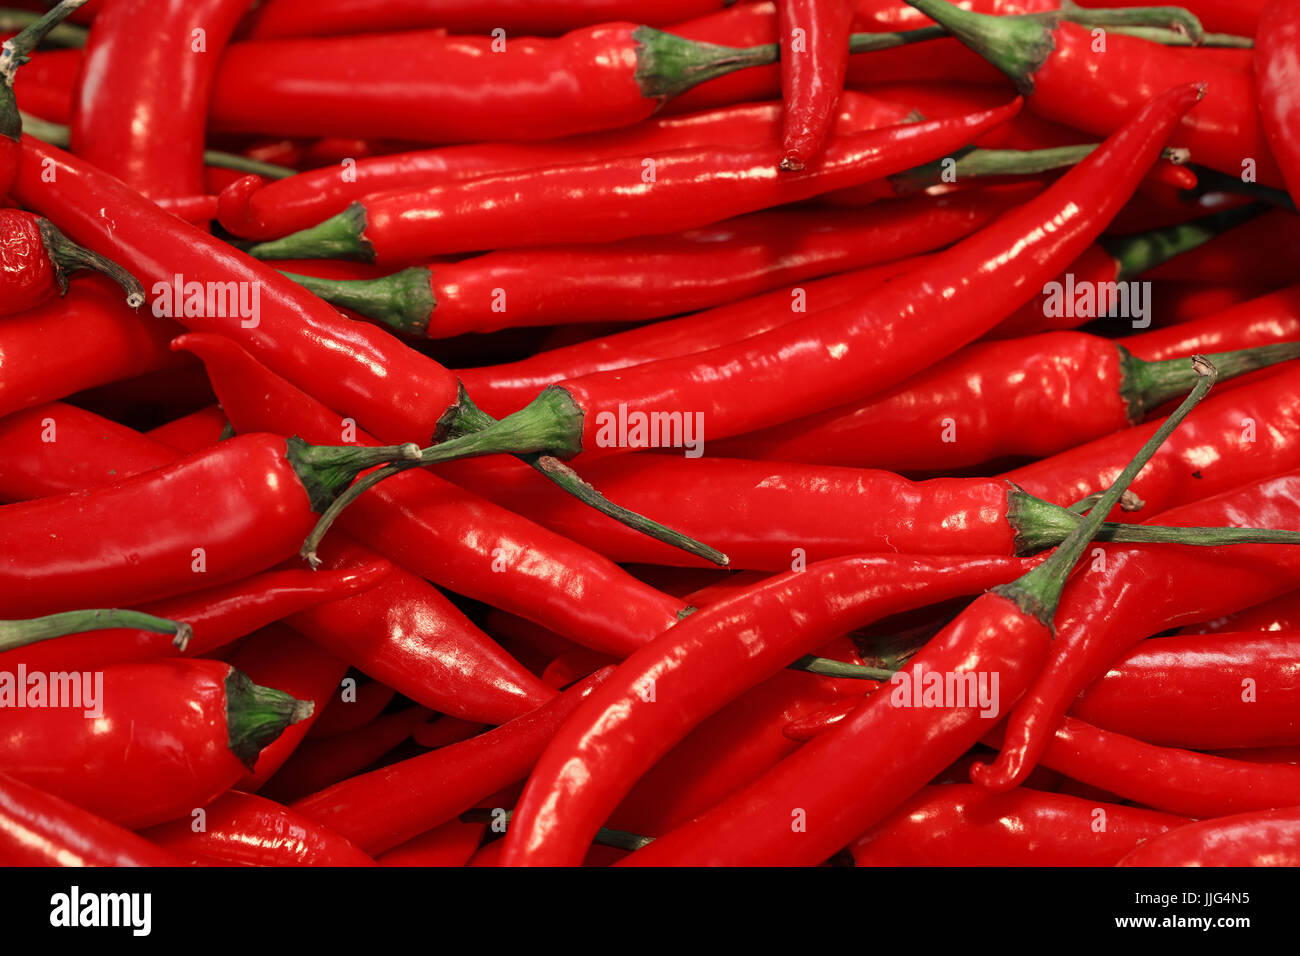 Haufen von red hot Chili peppers im Einzelhandel Landwirte Markt Stall, Hintergrundmuster, erhöhte Ansicht Nahaufnahme Stockfoto